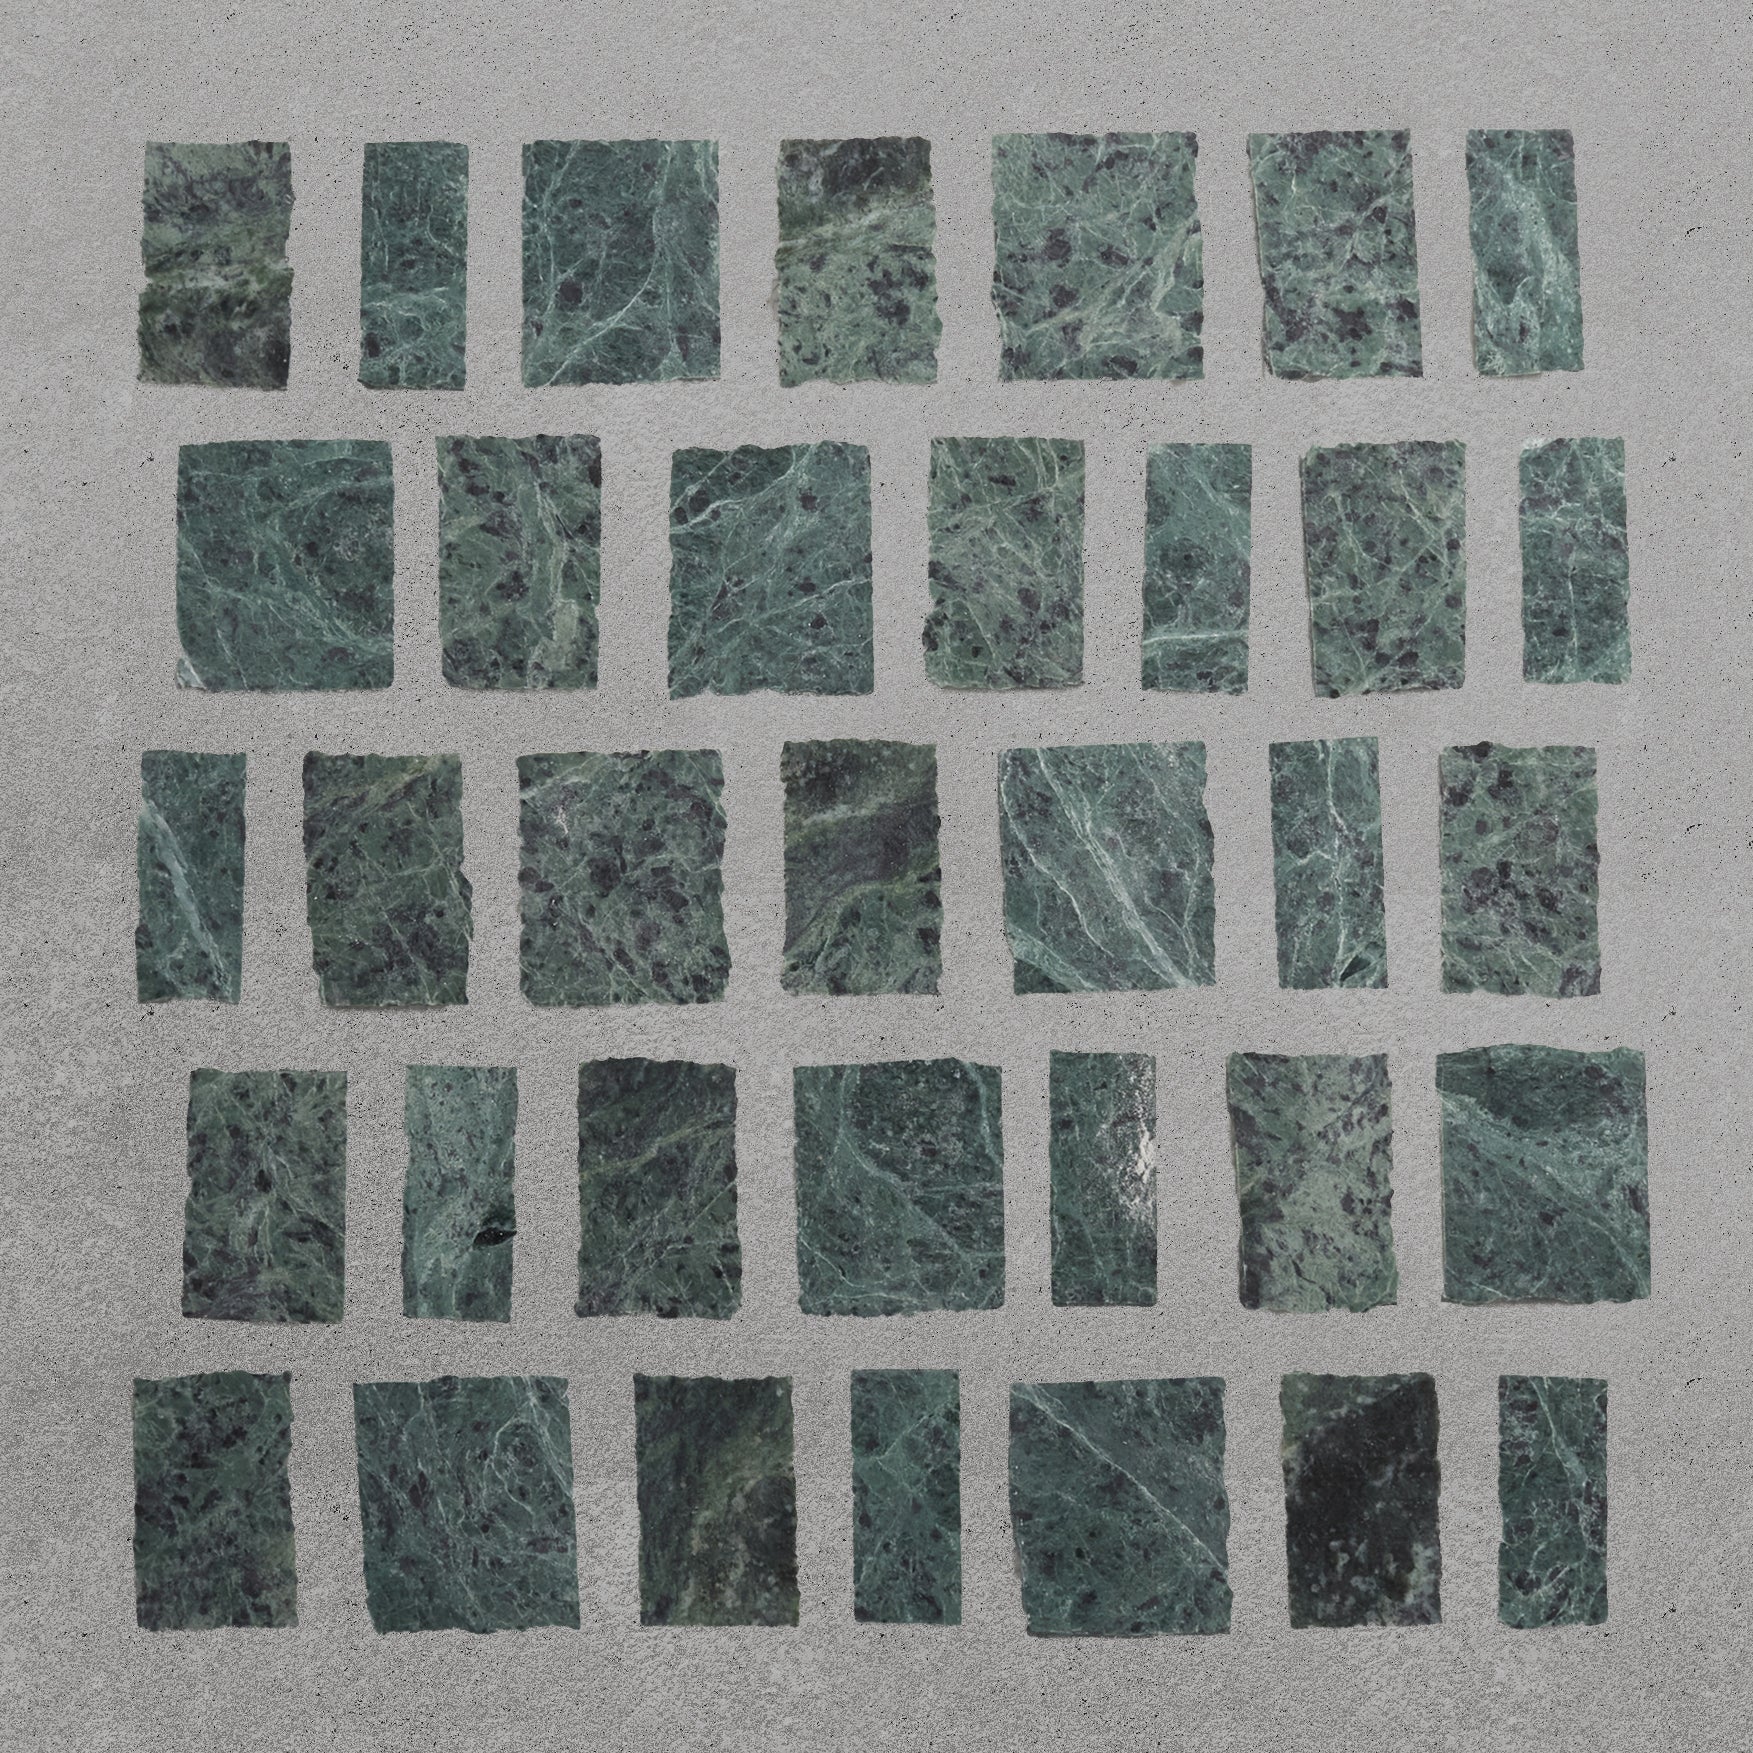 Sockel Uno Schwarz Feinsteinzeug poliert - 7 cm x 60 cm x 1 cm - Mosaic  Outlet